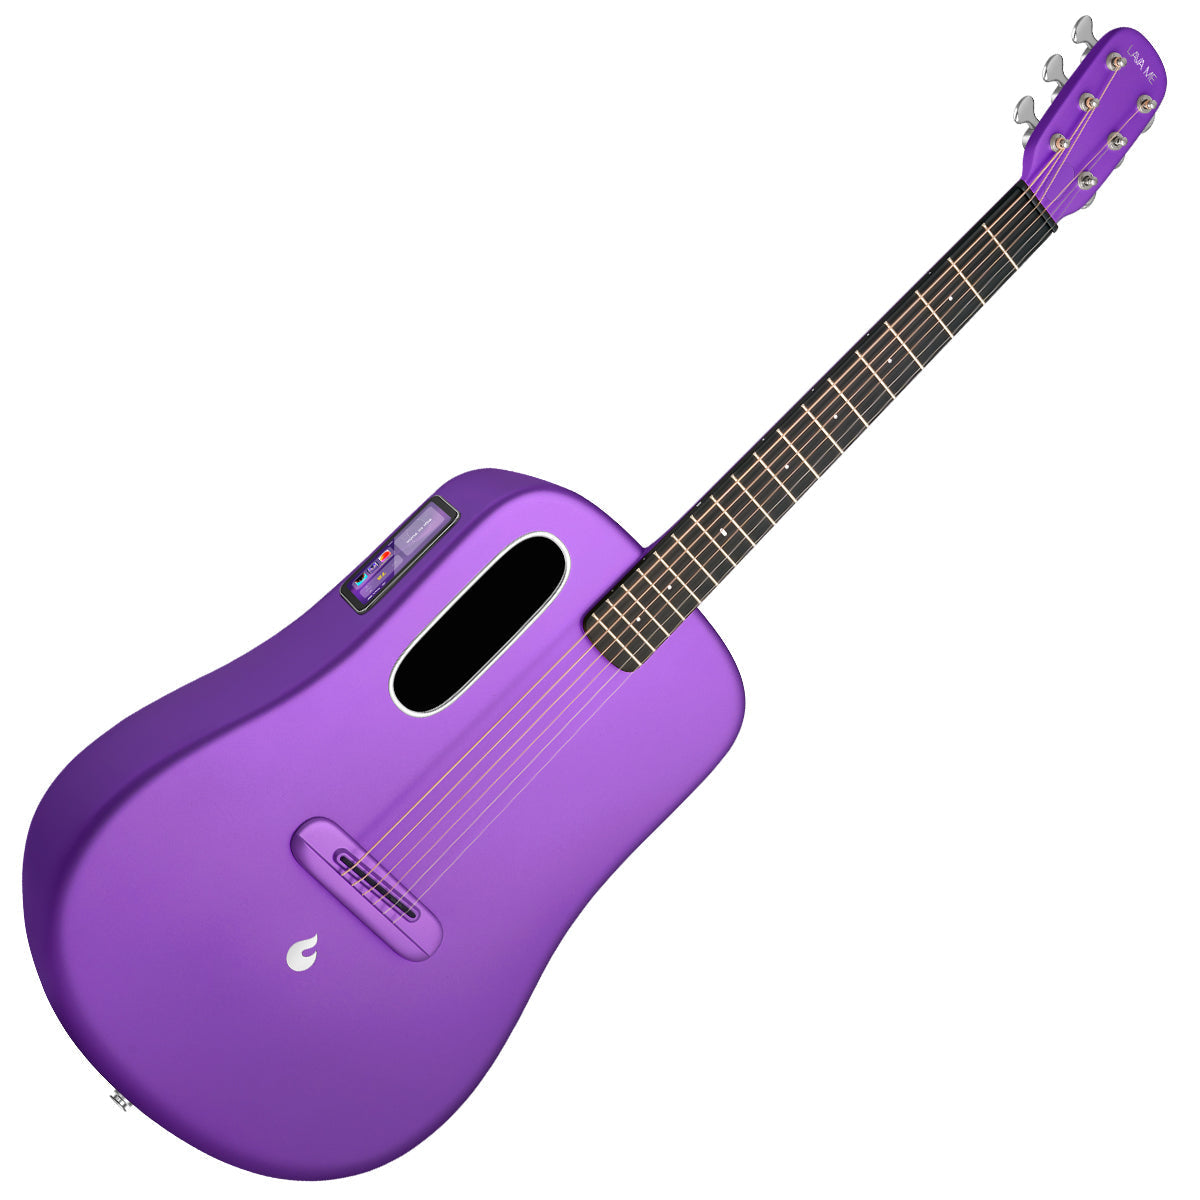 LAVA ME4 Carbon 38" with AirFlow Bag ~ Purple, Acoustic Guitar for sale at Richards Guitars.